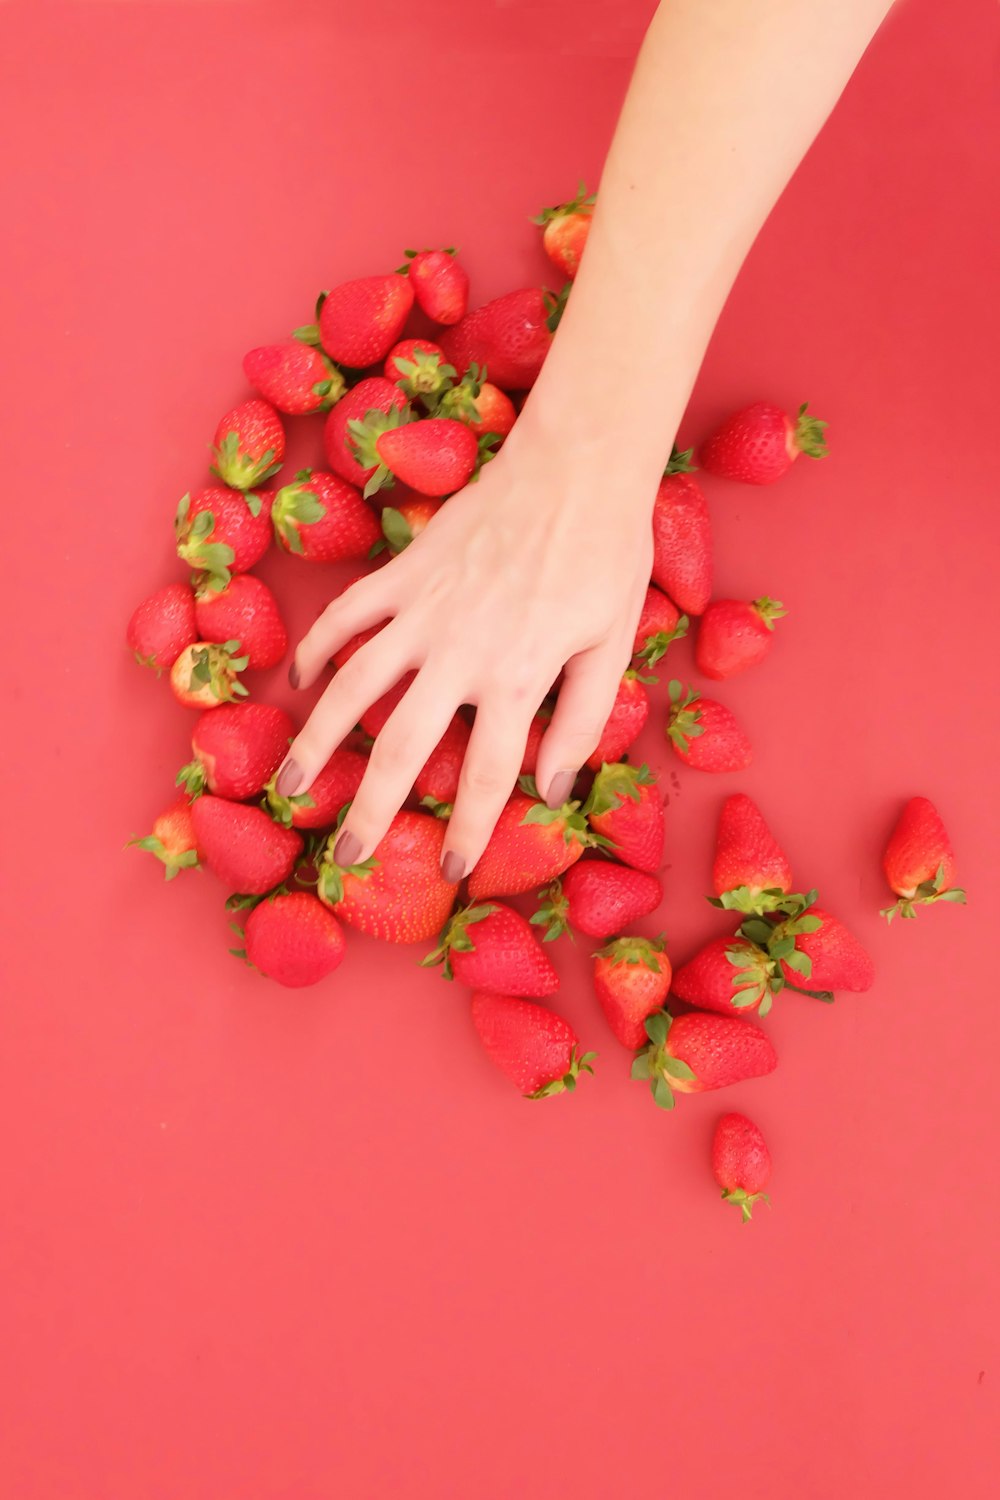 mano de personas con fresas rojas